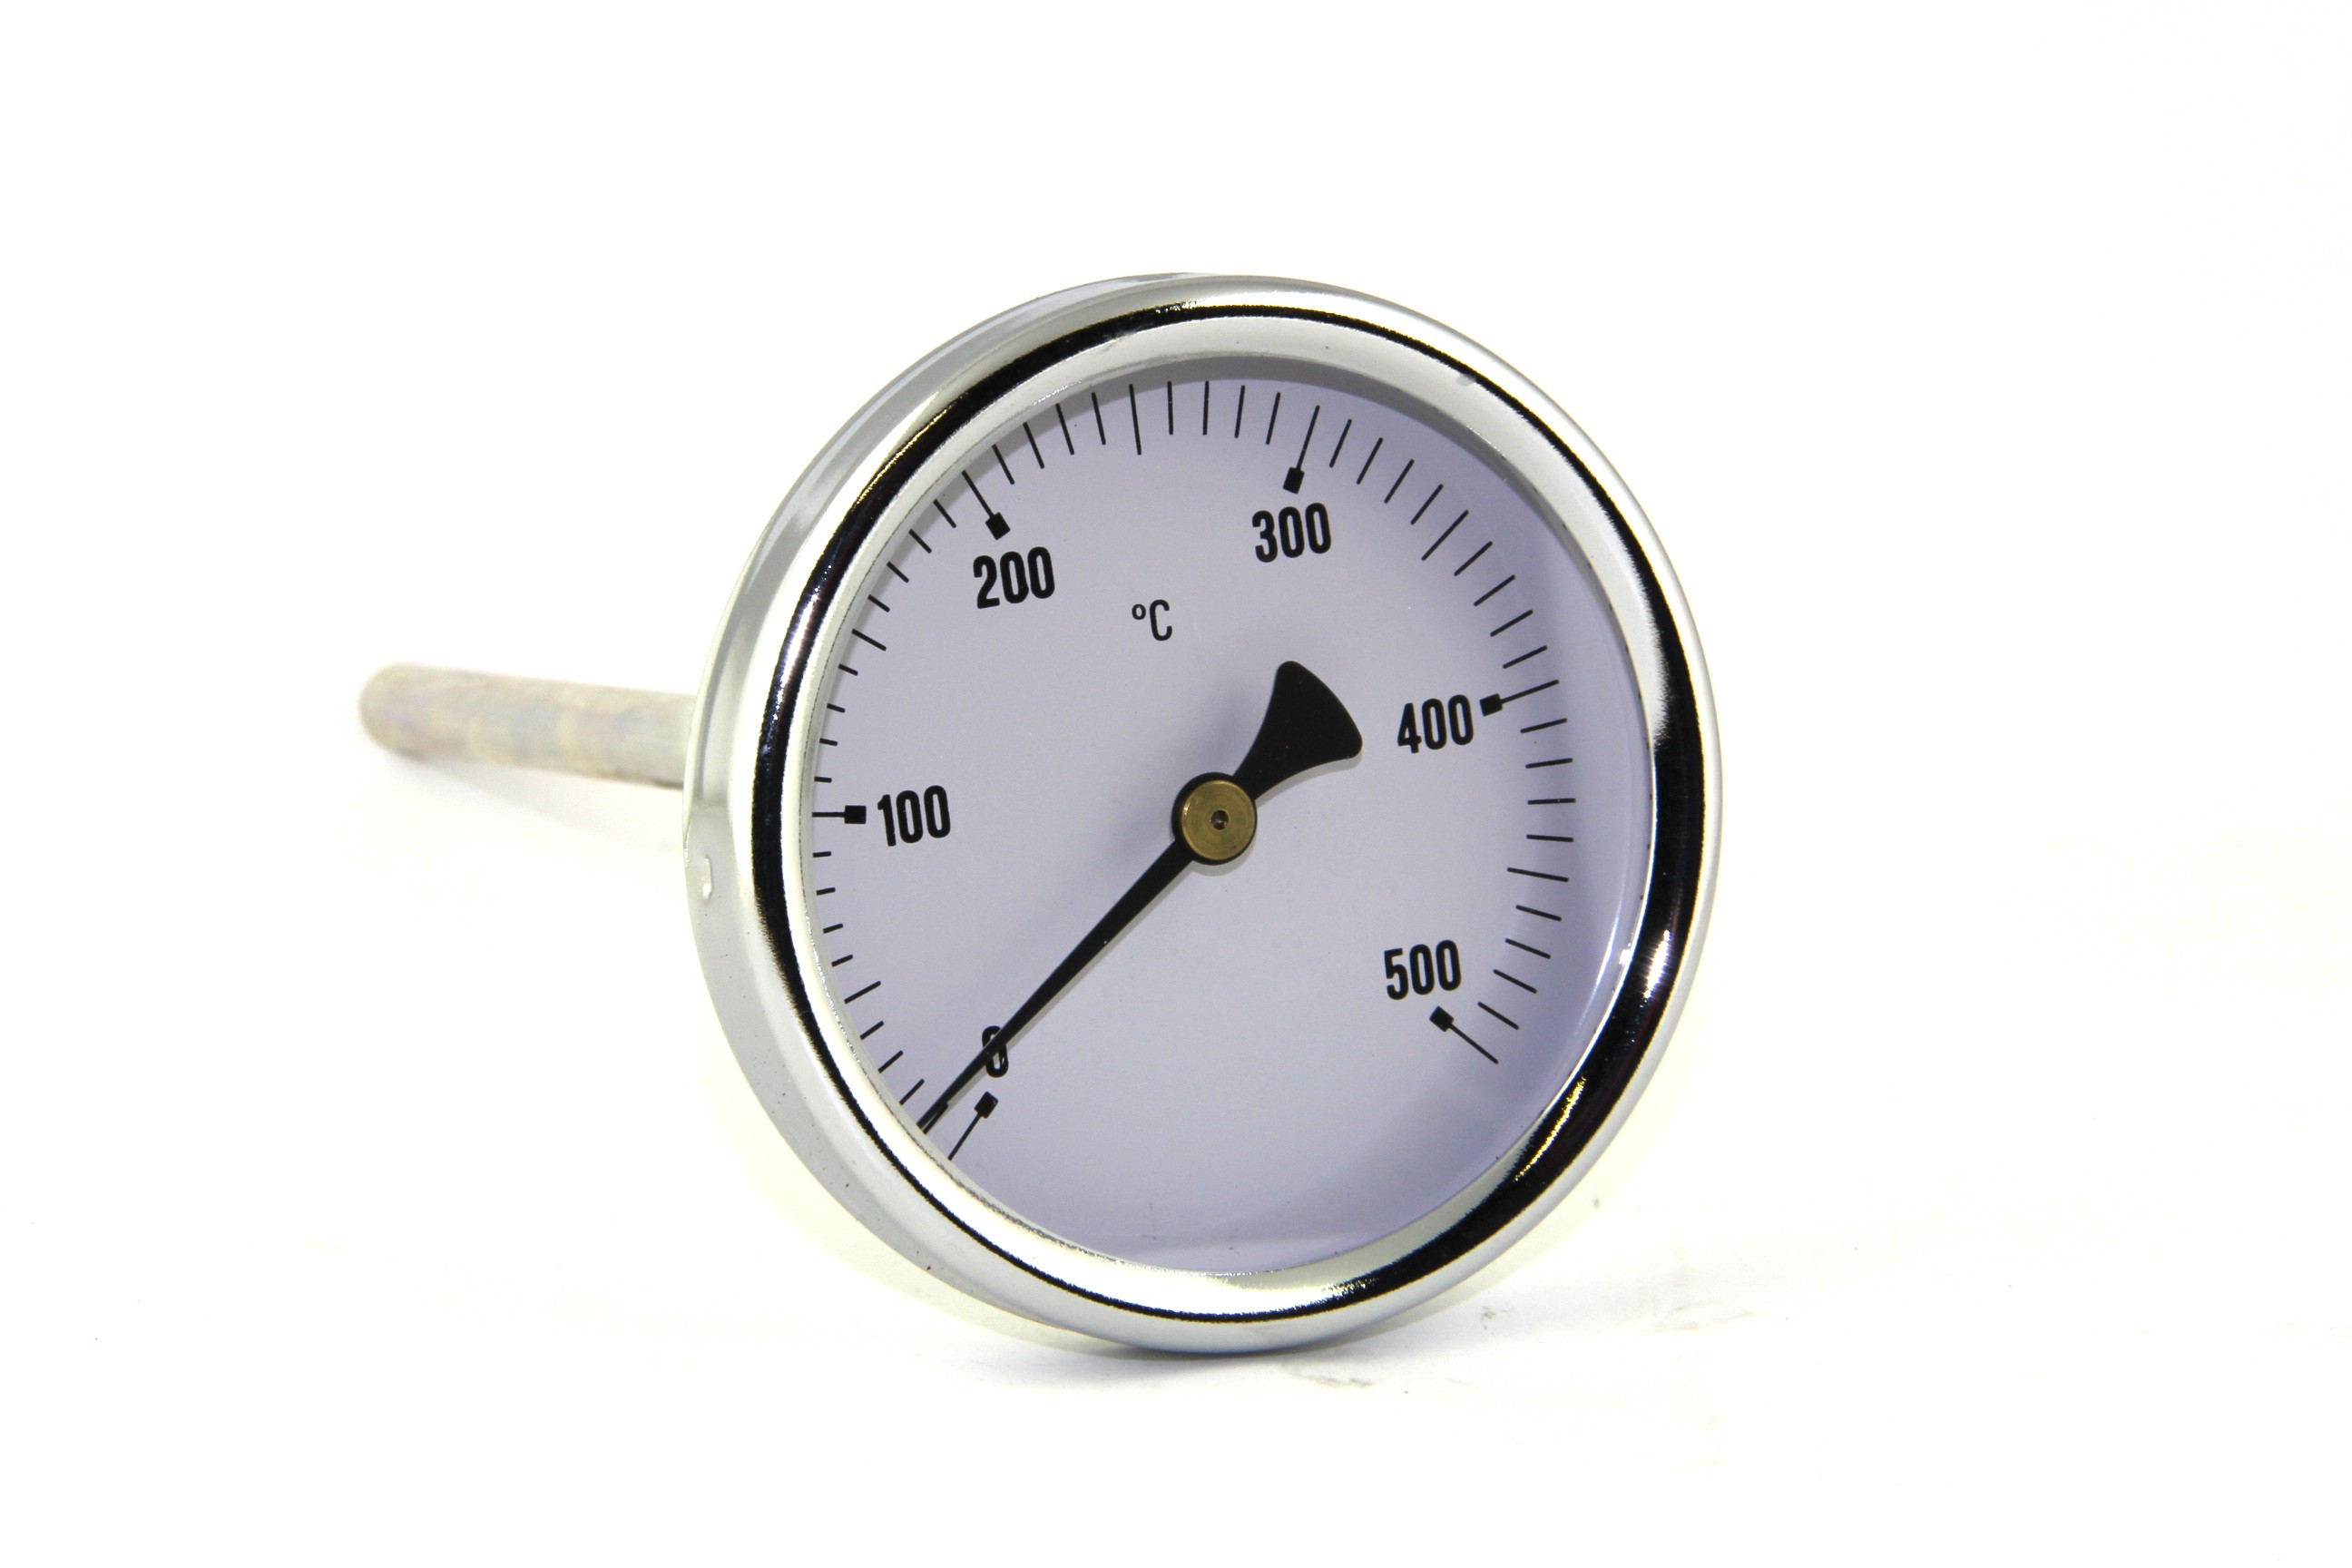 Flue gas temperature meter 0-500 "C